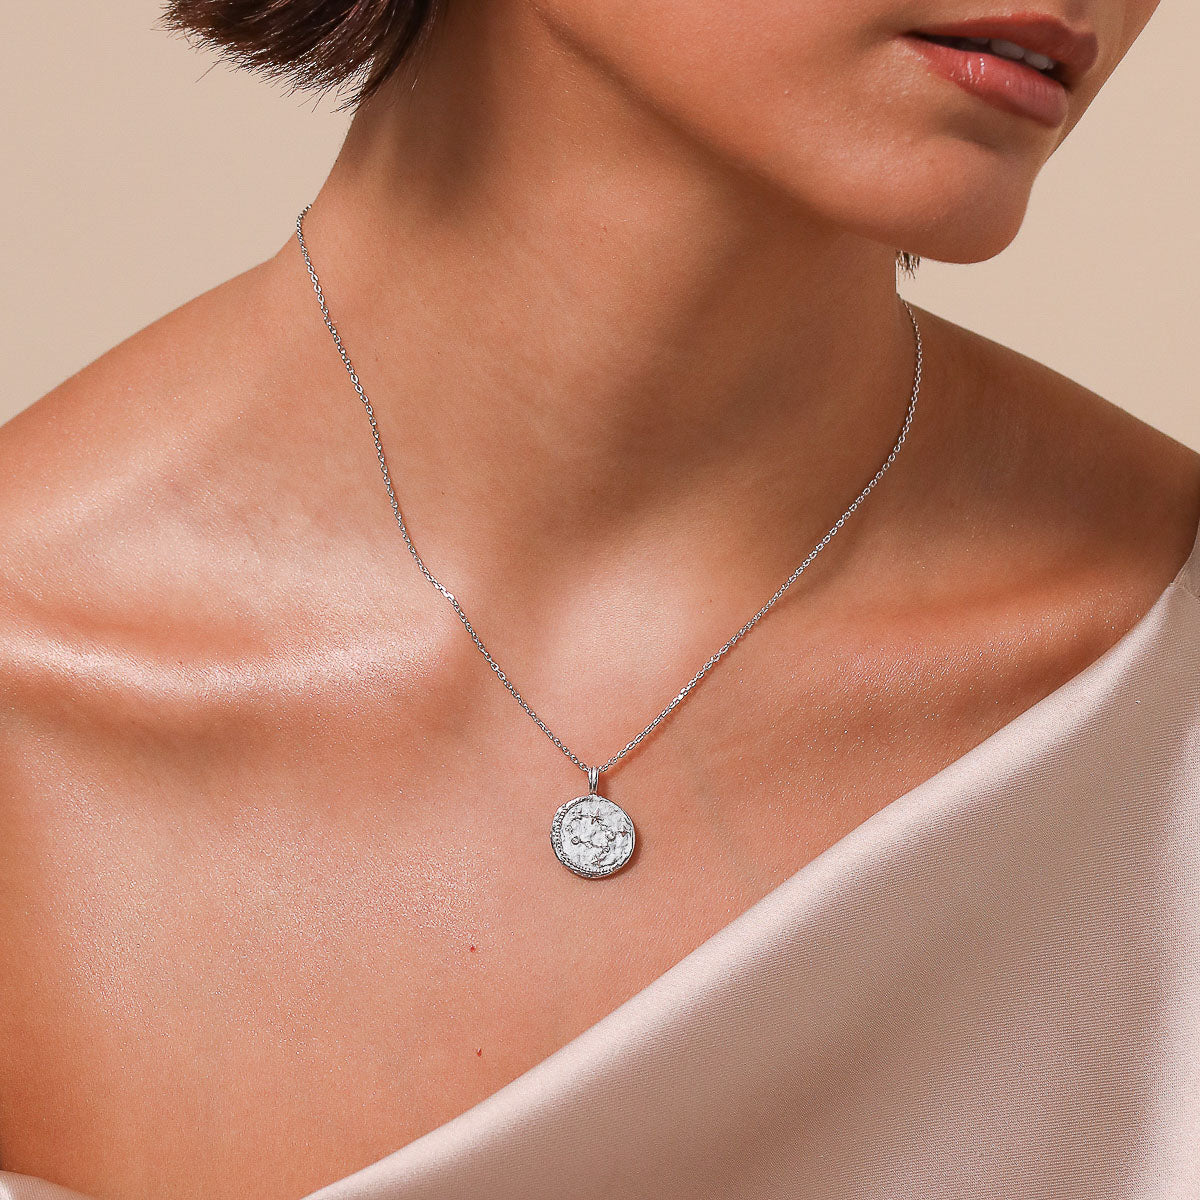 Necklace With Pendant Pendant Round Neck Pendant Jewelry Jewelry